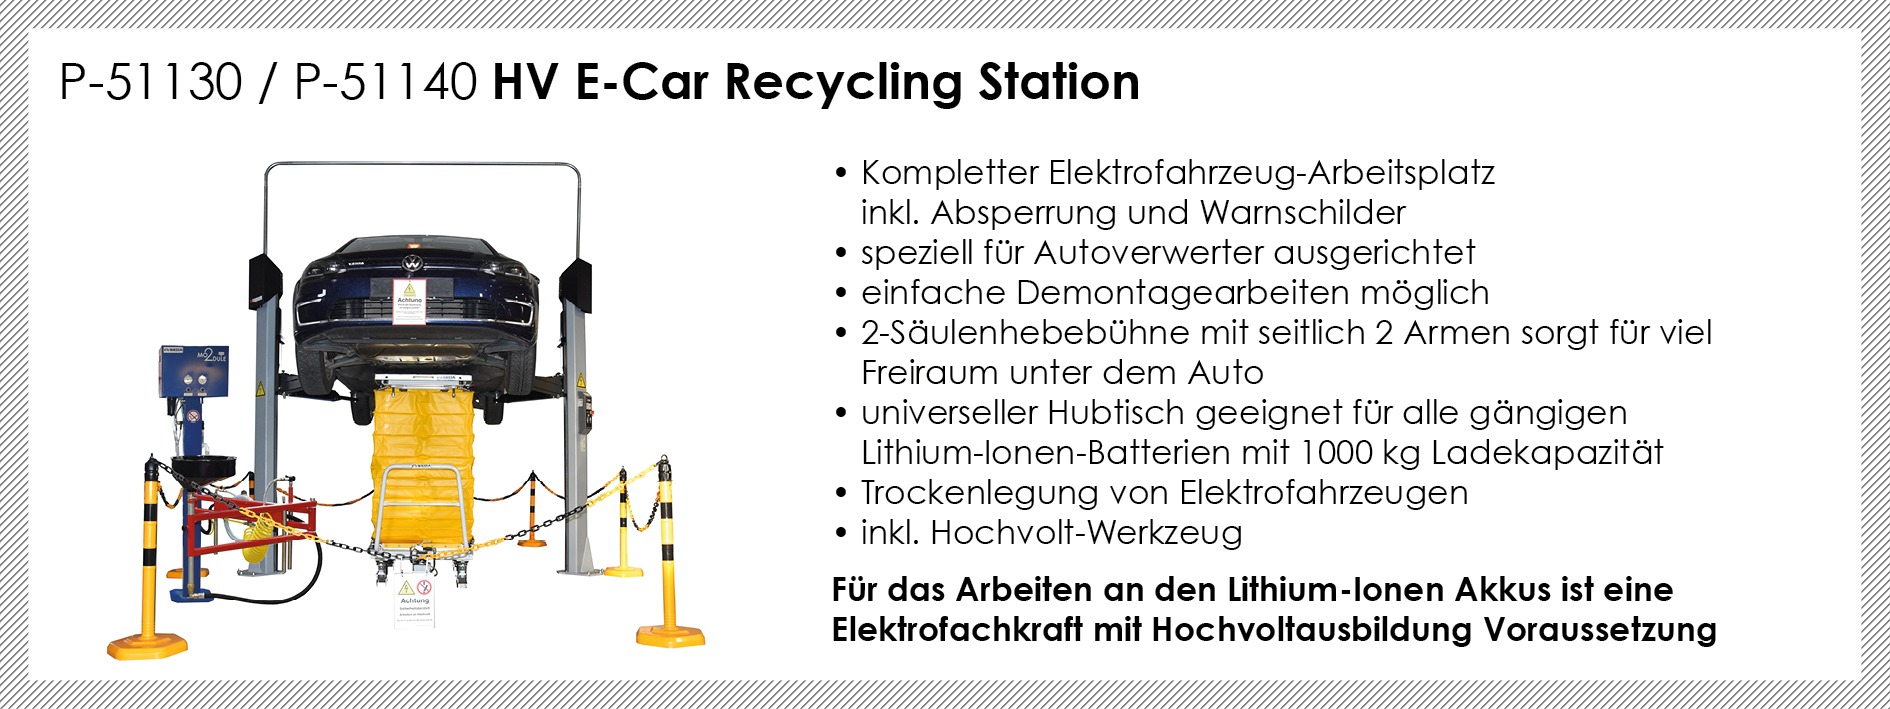 VER MAIL DE HV E car Recycling Station - E-Fahrzeug Recycling - wann geht es richtig los?